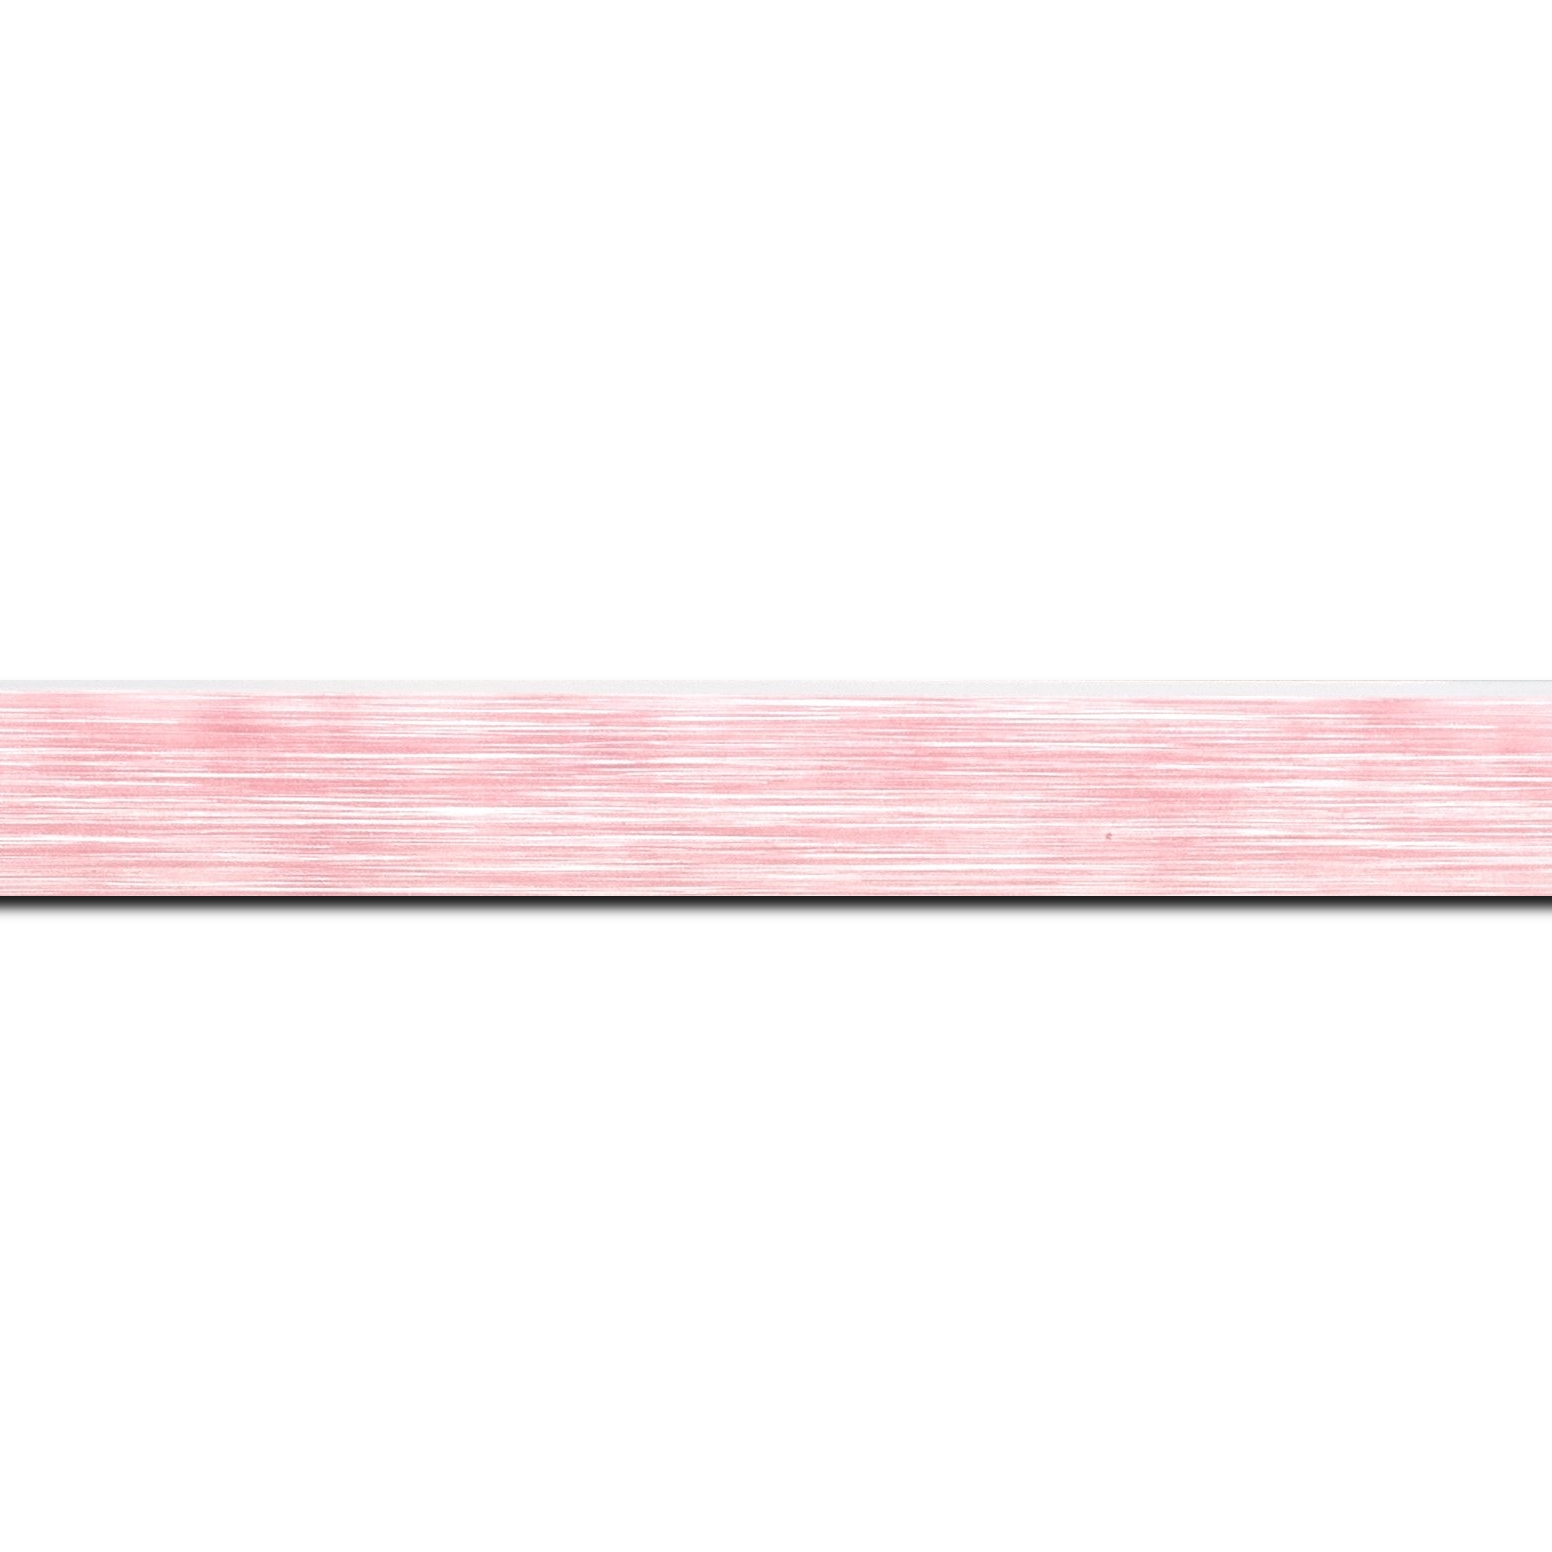 Baguette longueur 1.40m bois profil arrondi en pente plongeant largeur 2.4cm couleur rose tendre, arête et chant extérieur du cadre blanc